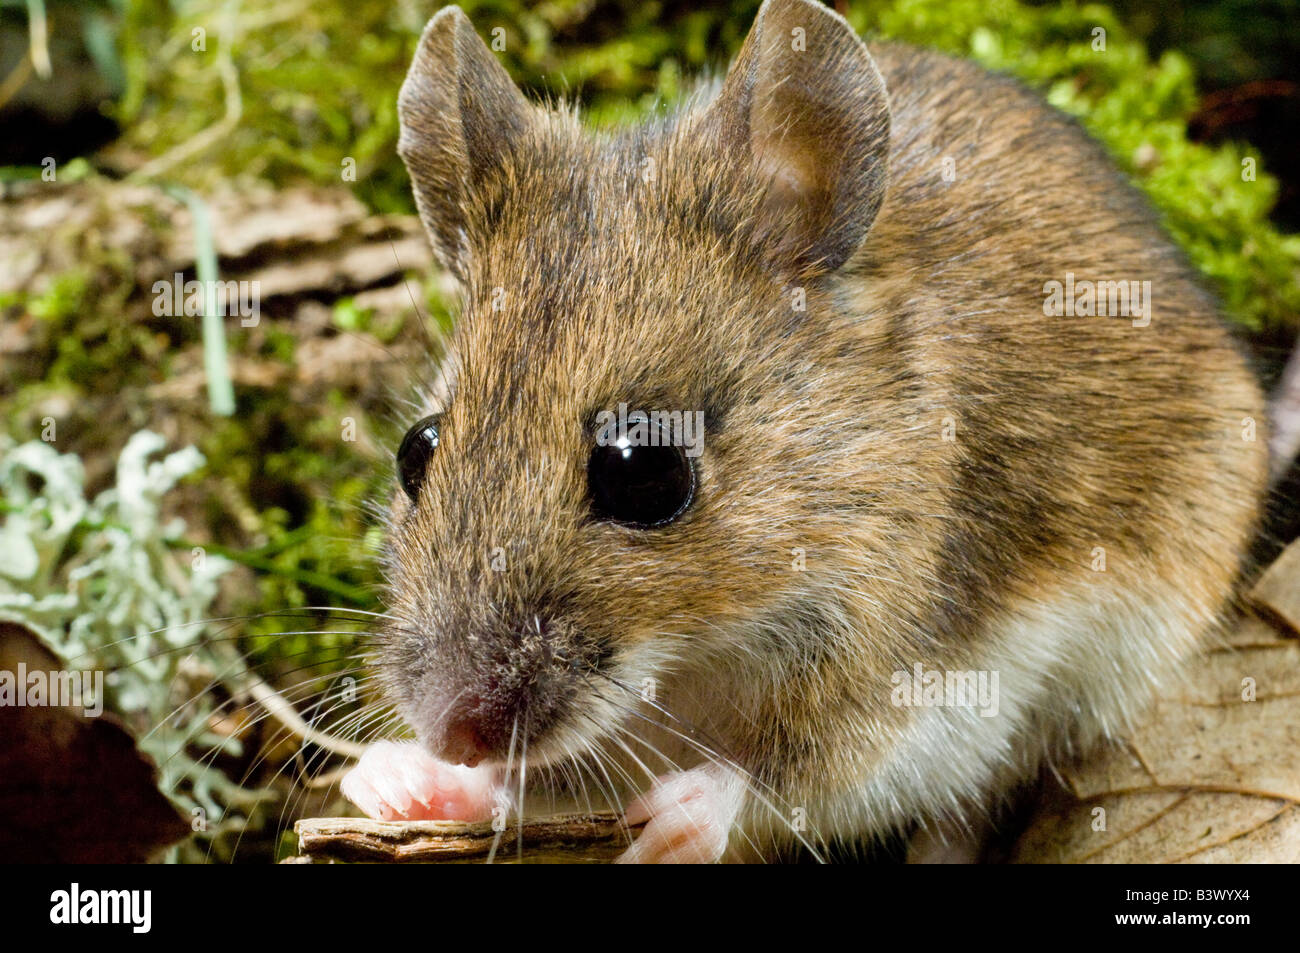 Wood Mouse Apodemus sylvaticus o lunga coda di topo di campo alimentare Foto Stock